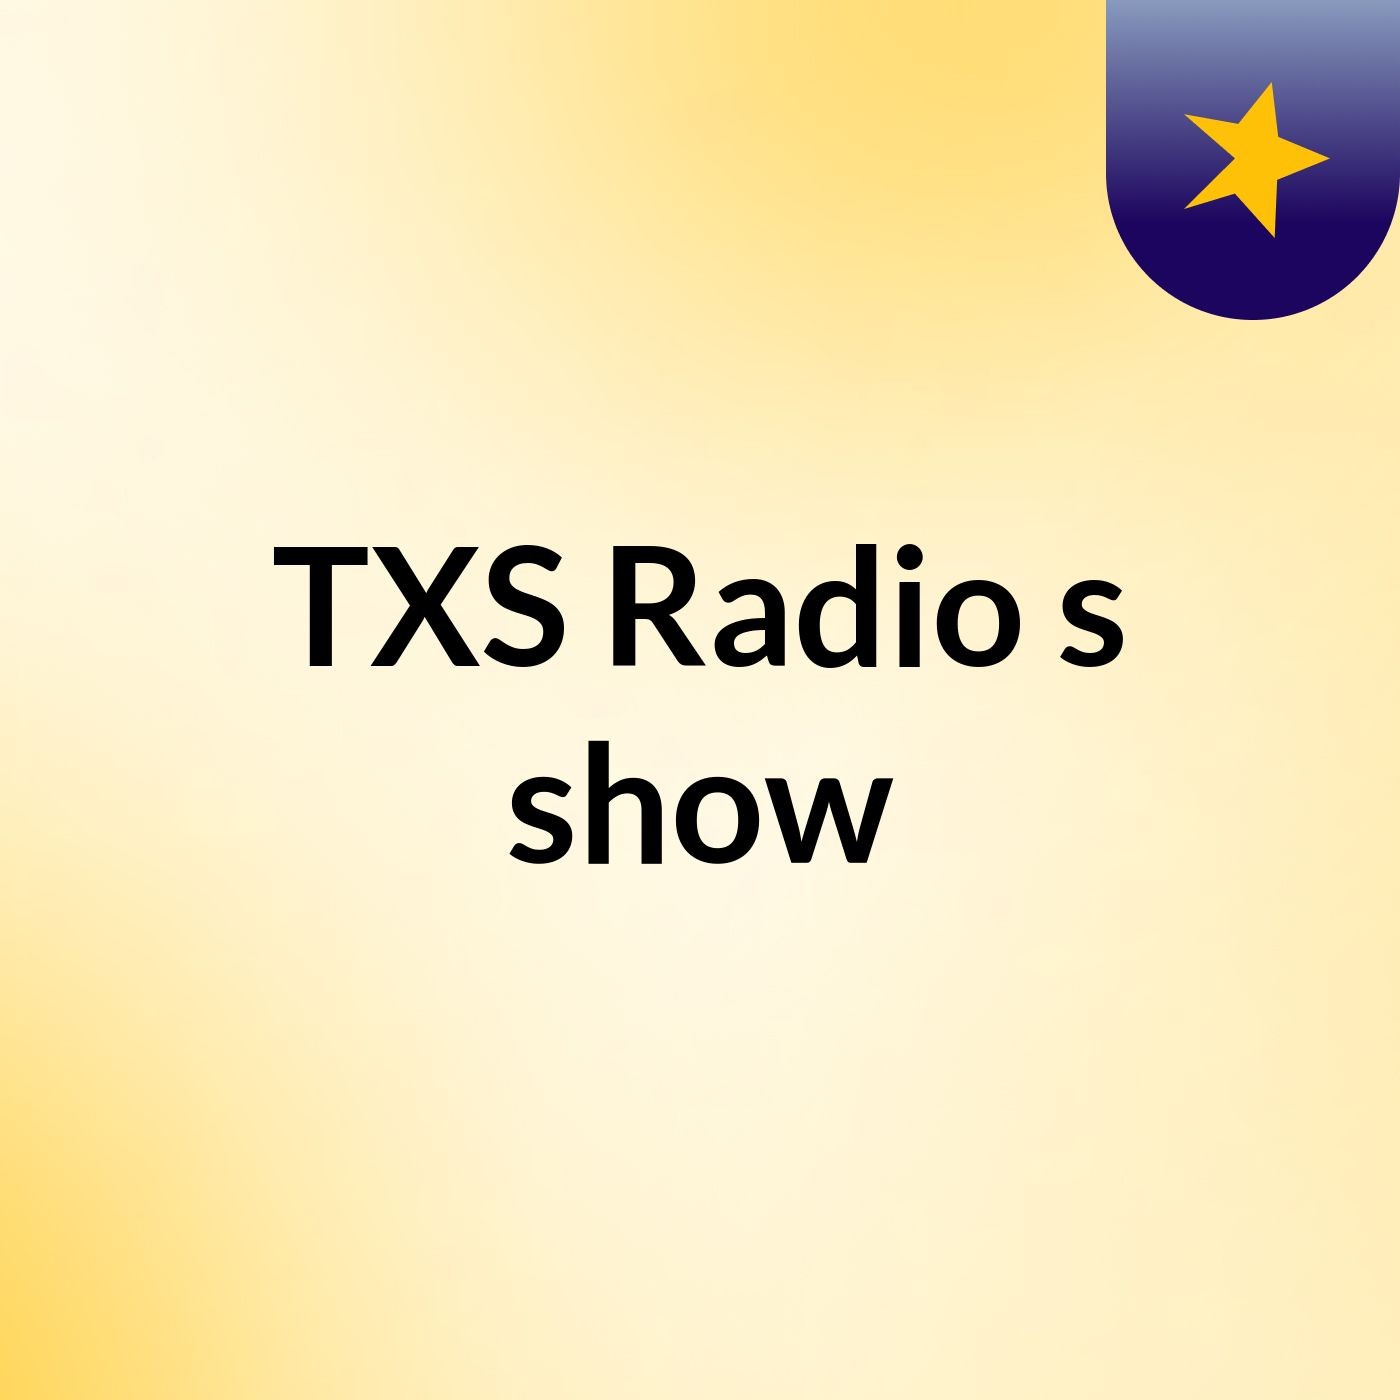 TXS Radio's show